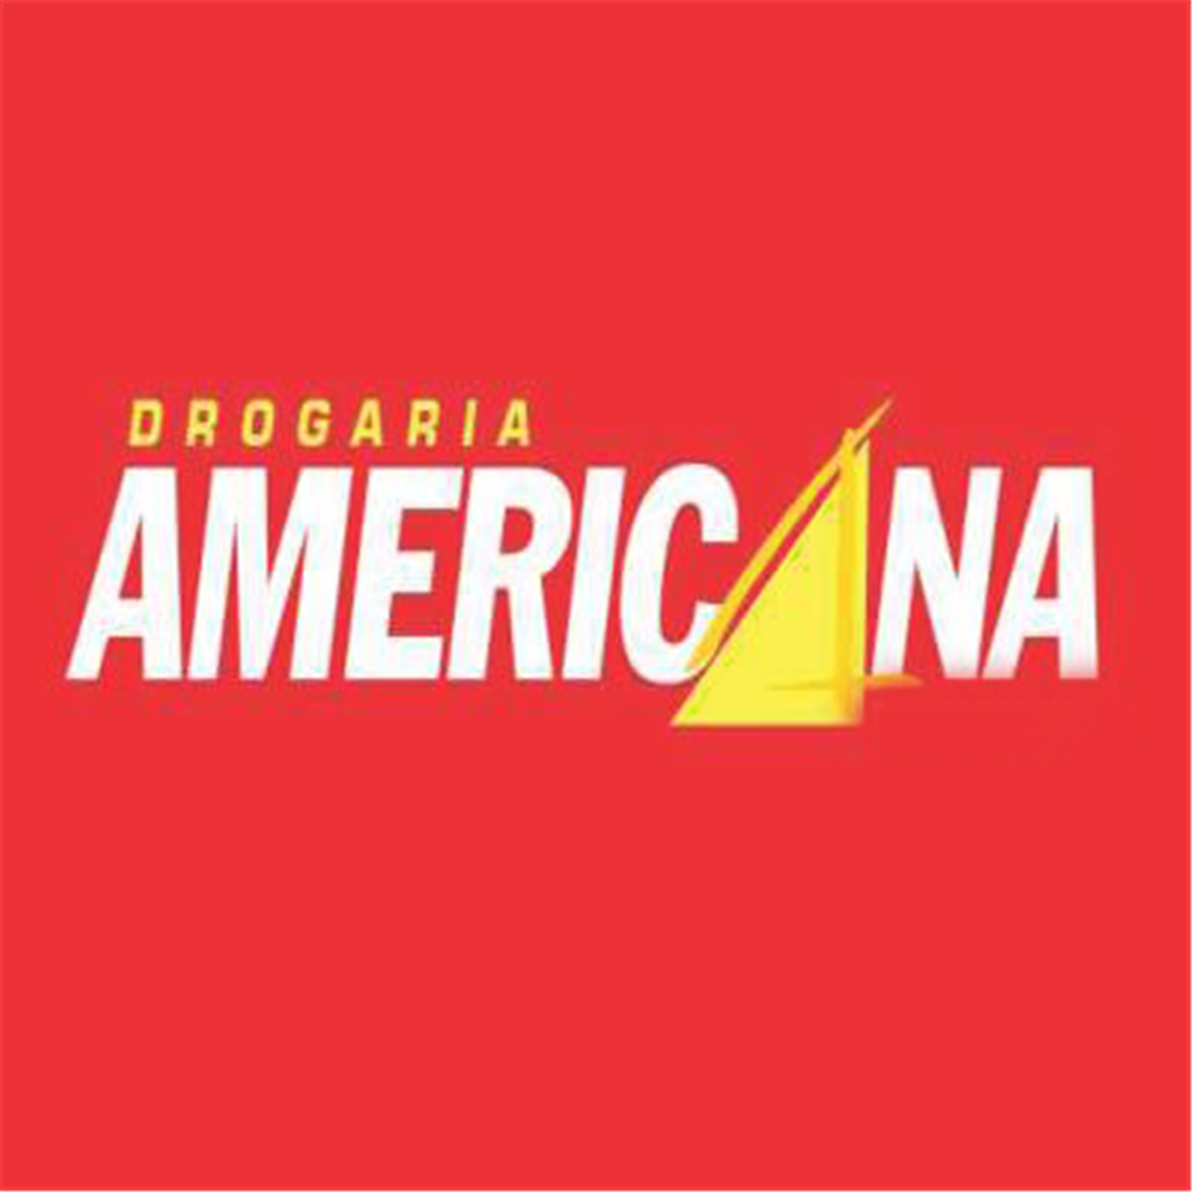 Drogaria Americana - Farmácia, Conceição da Aparecida, MG, (35) 3564-1